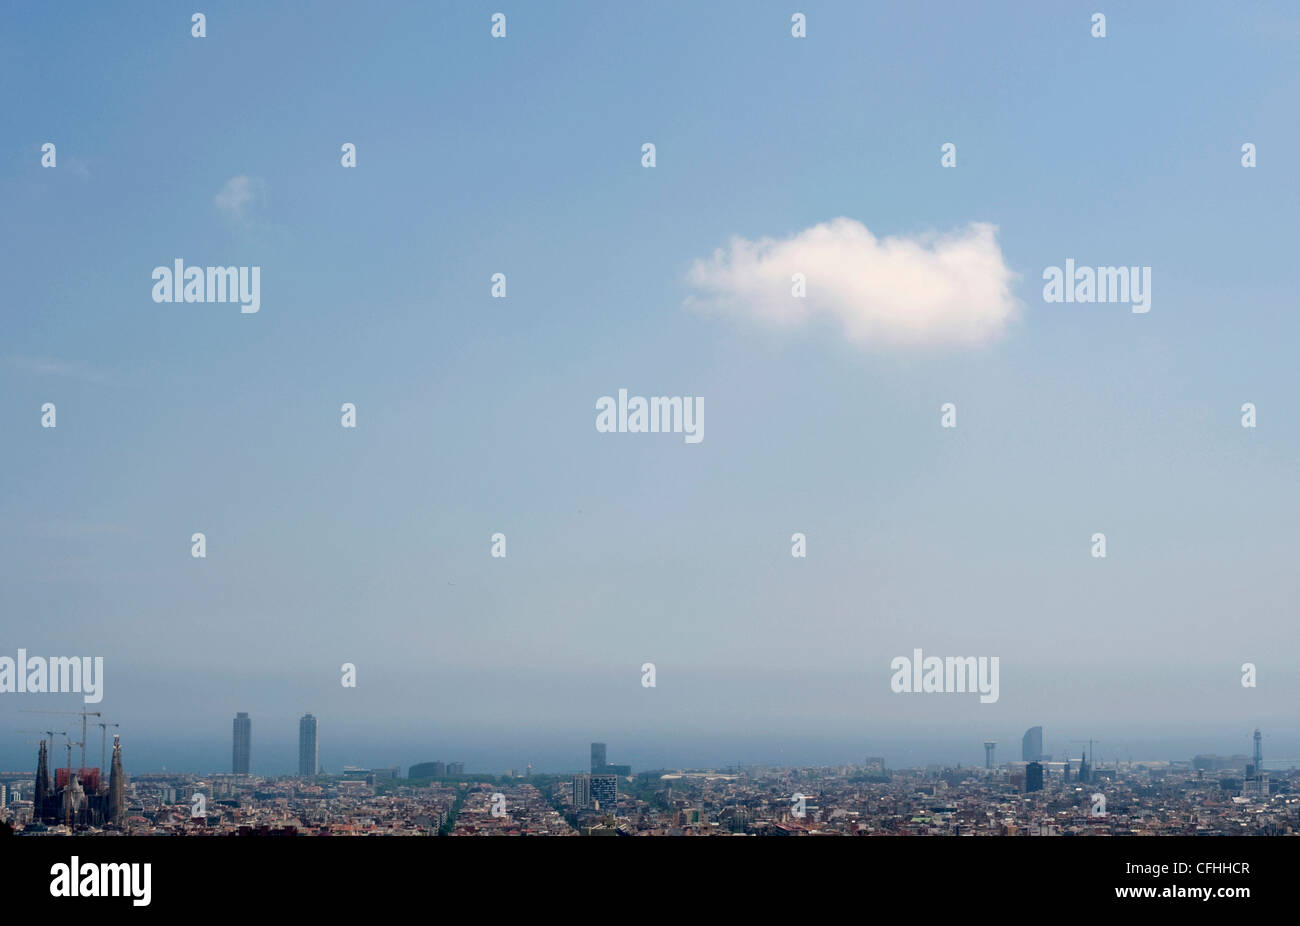 La vue sur la ville de Barcelone, la Sagrada Familia et la mer depuis le Parc Guell avec un nuage blanc dans le ciel bleu clair. Banque D'Images